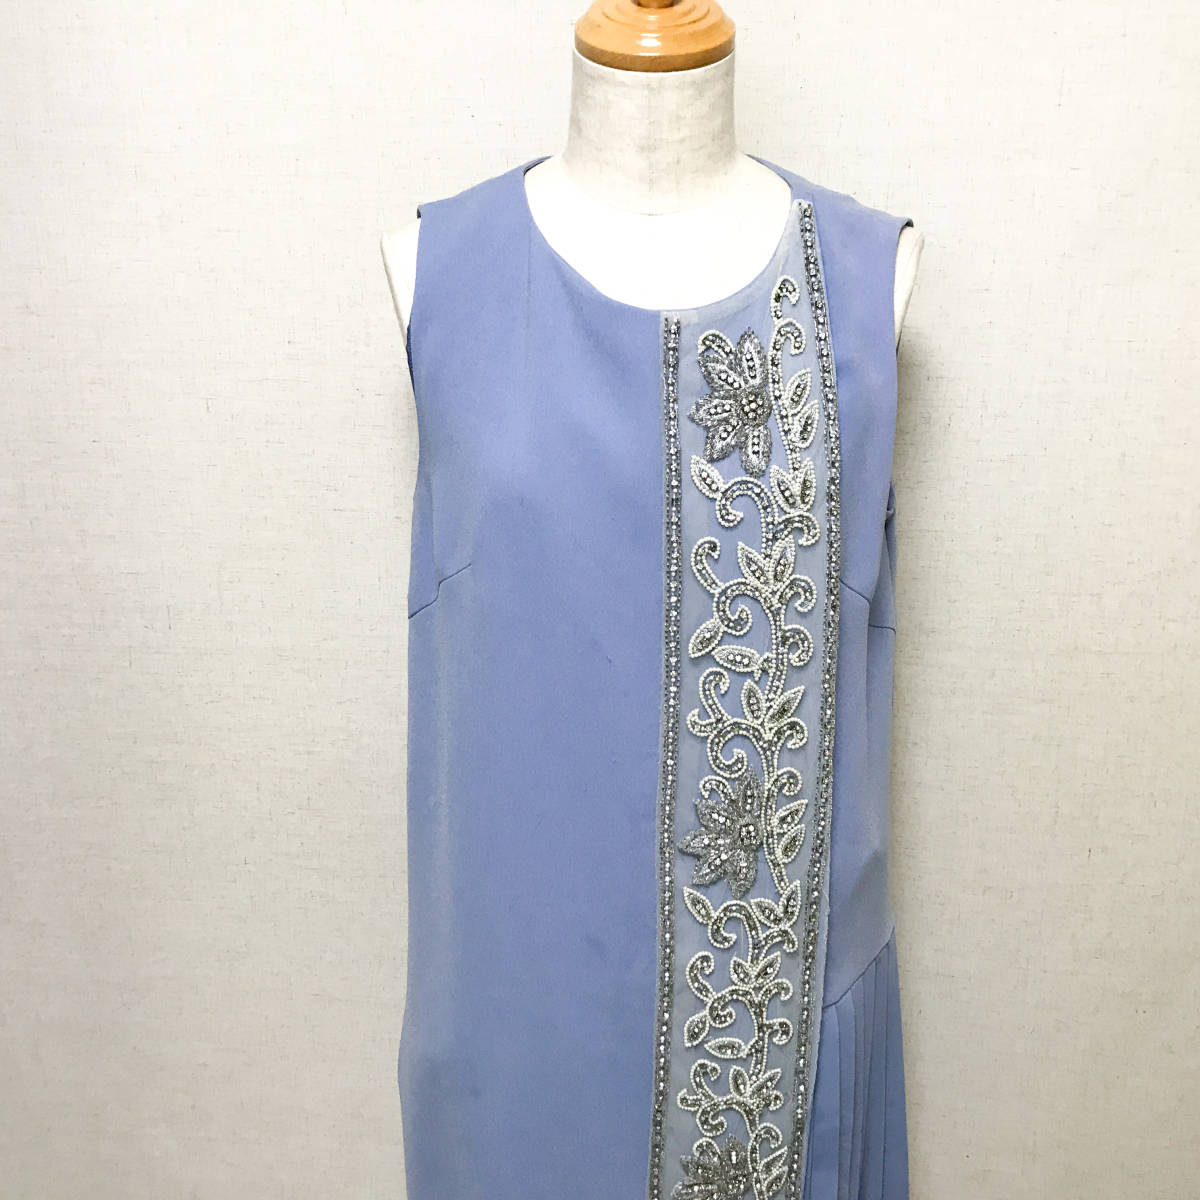  Grace Continental dress dress 38 light blue HNA2206-3-S8-M10